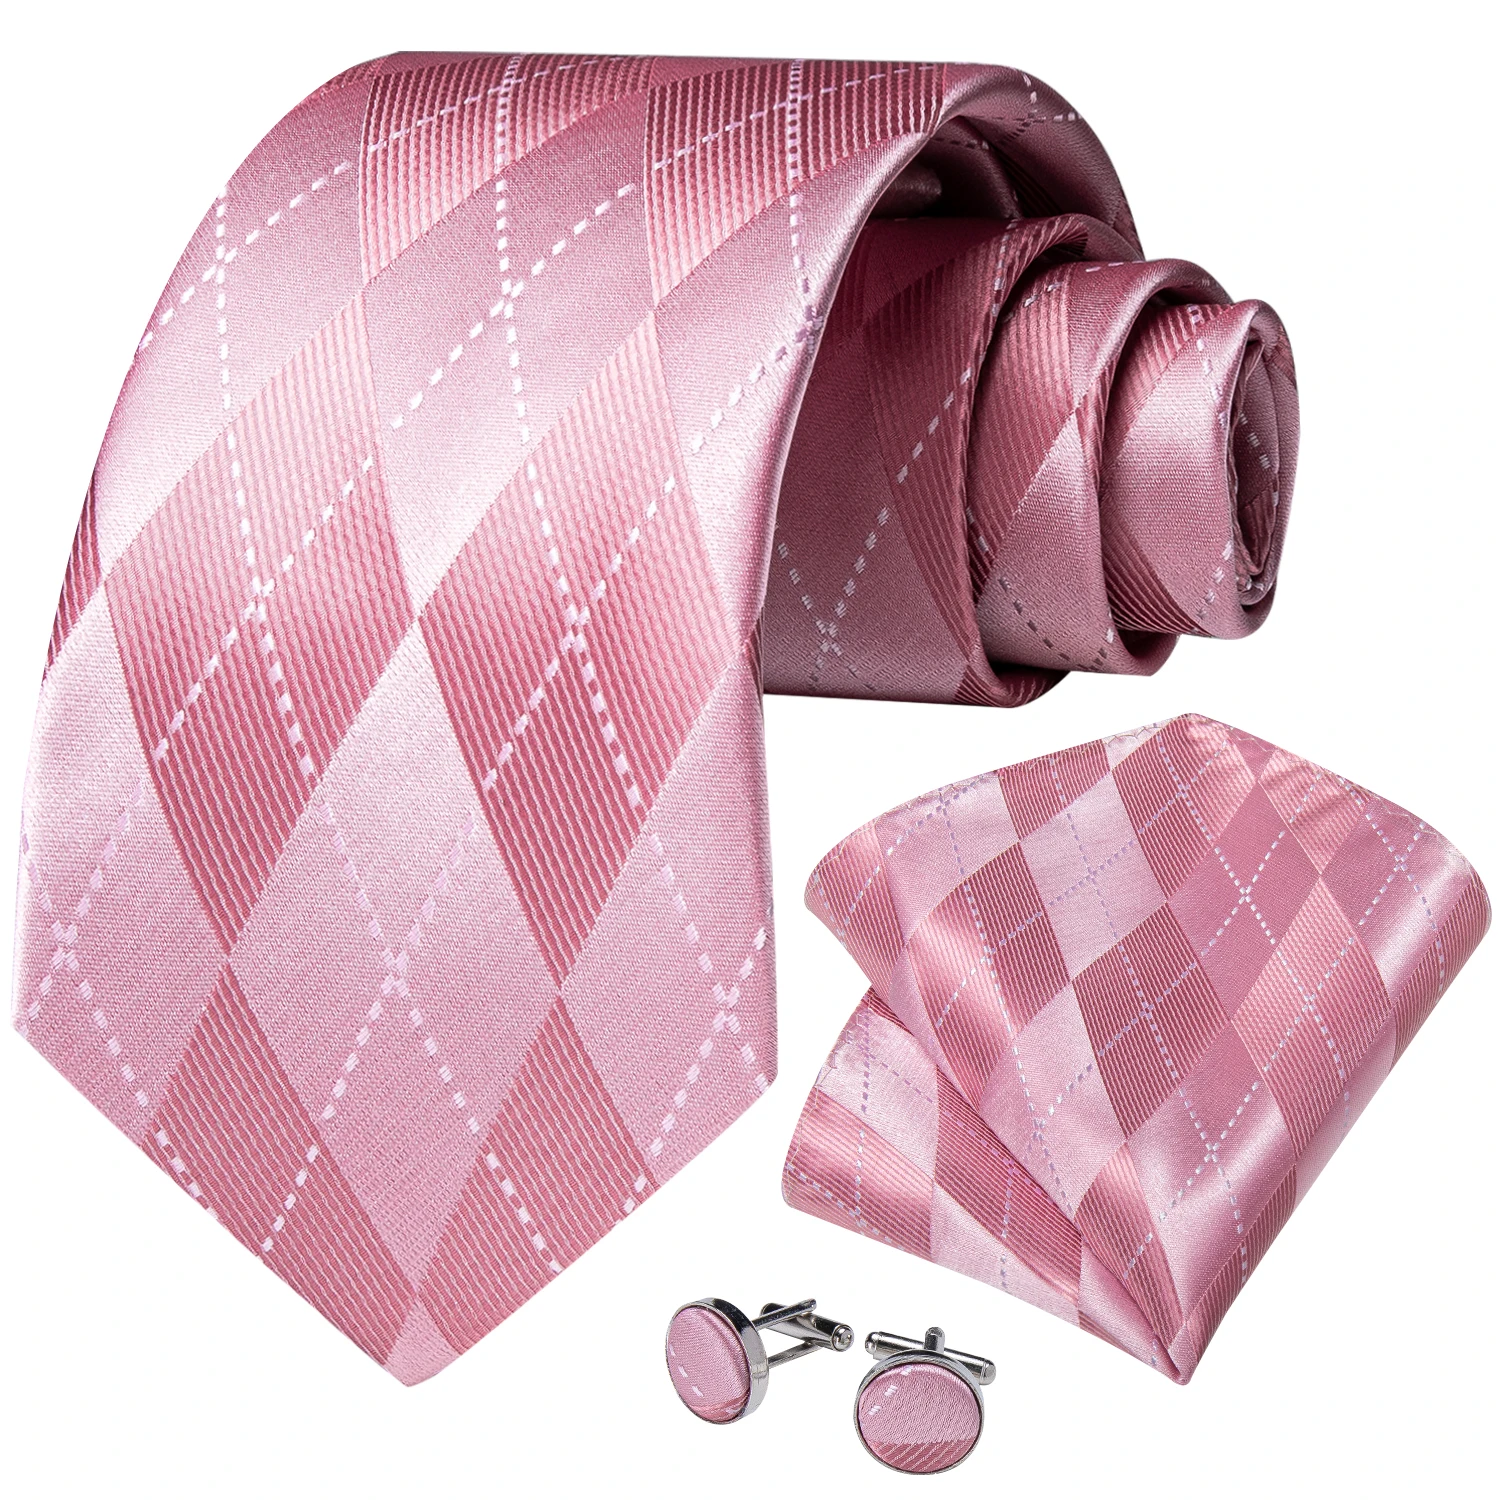 Lüks Tasarımcı Pembe Ekose ipek kravatlar Erkekler İçin 8cm İş Düğün Boyun Kravat Mendil Kol Düğmeleri Seti Hediye Erkekler İçin Toptan Görüntü 1